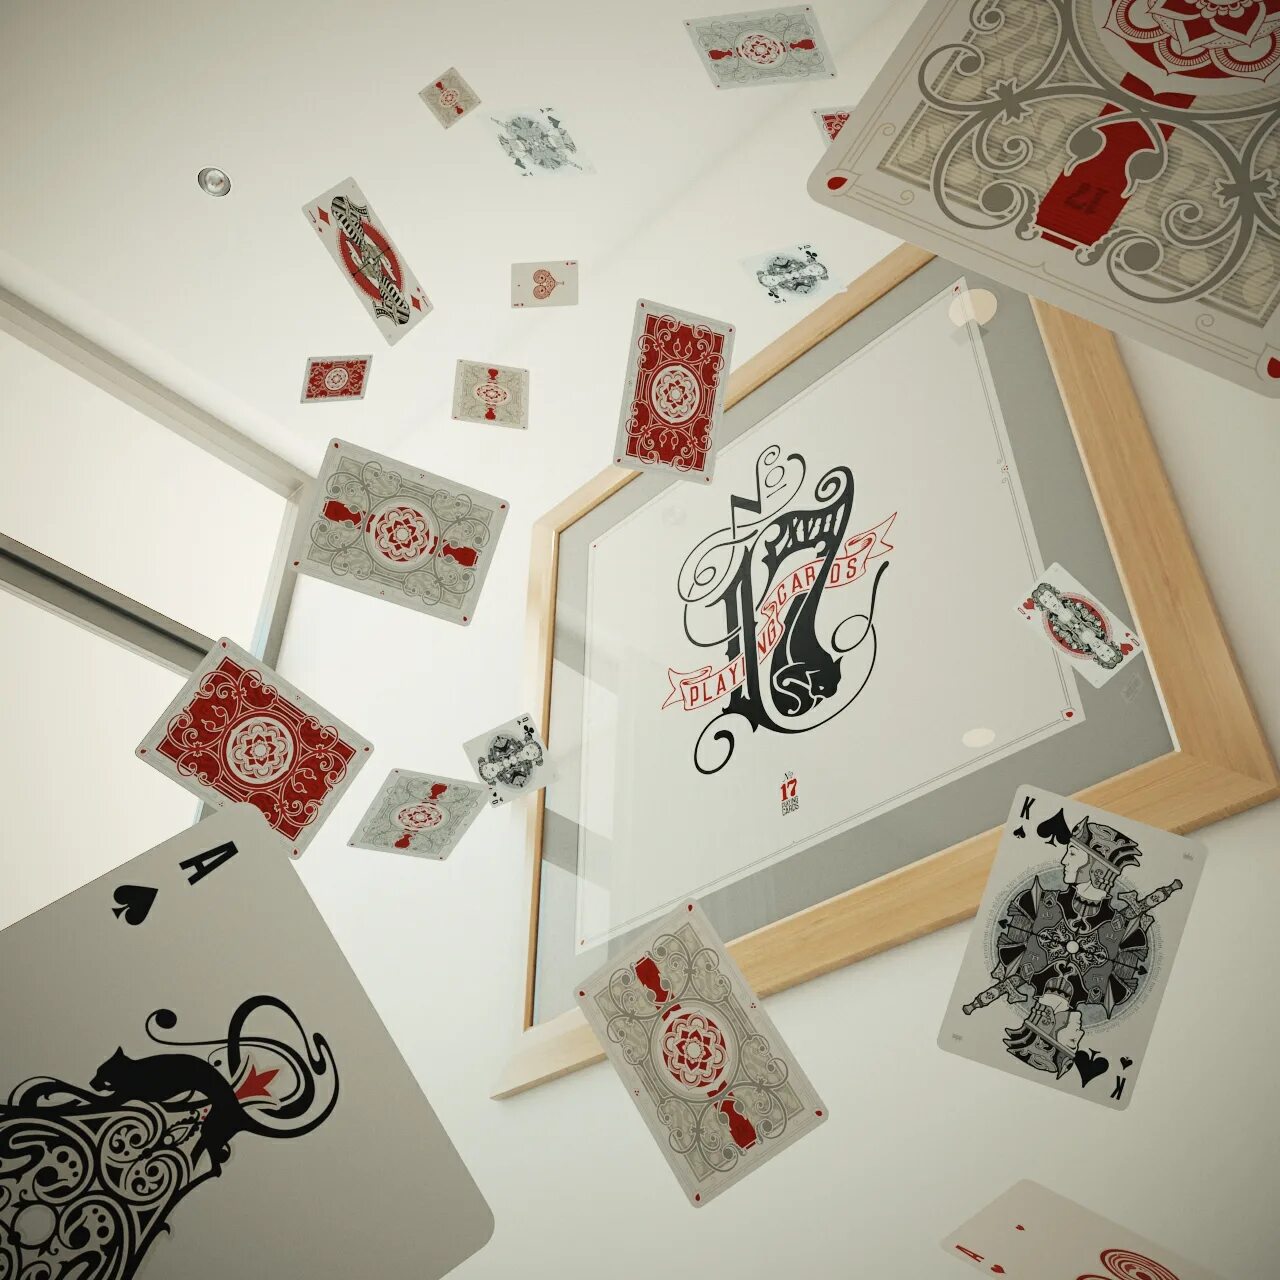 One s cards. Bicycle №17 playing Cards. «Bicycle №17 playing Cards» Джокер. Декор для комнаты из игральных карт. Игральные карты на стене.